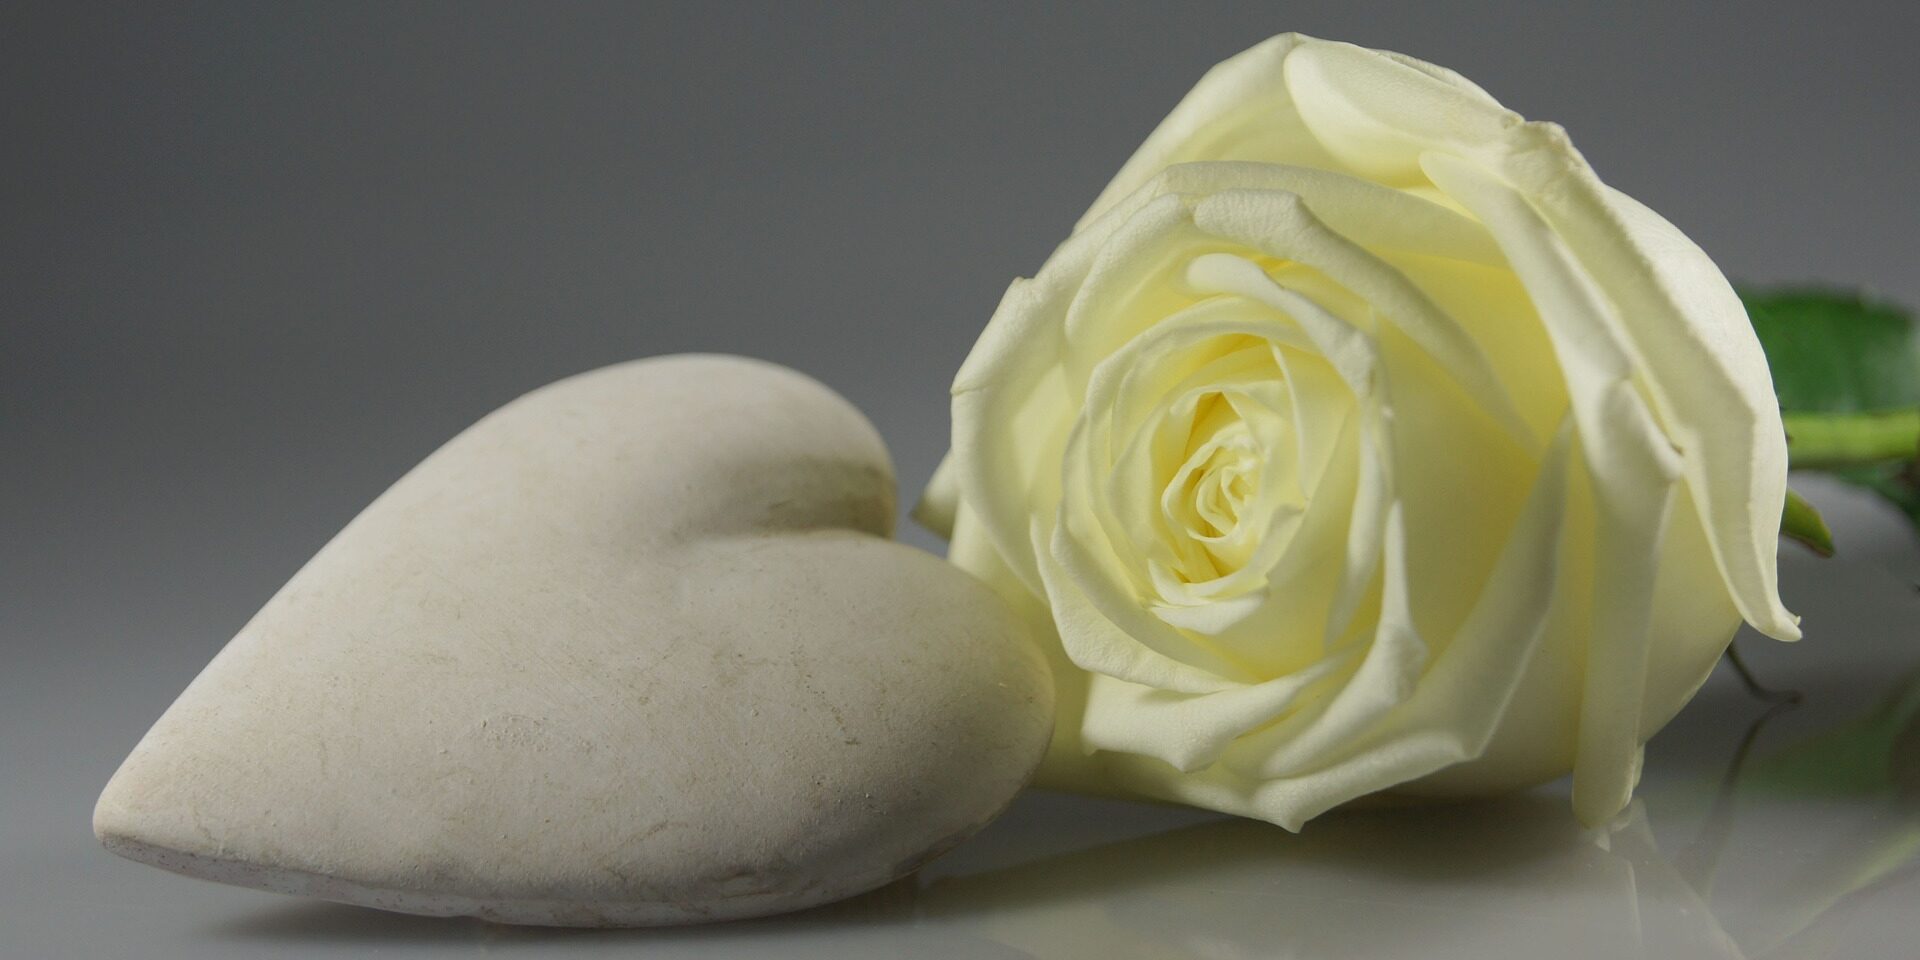 Hvitt hjerte i stein foran en hvit rose.